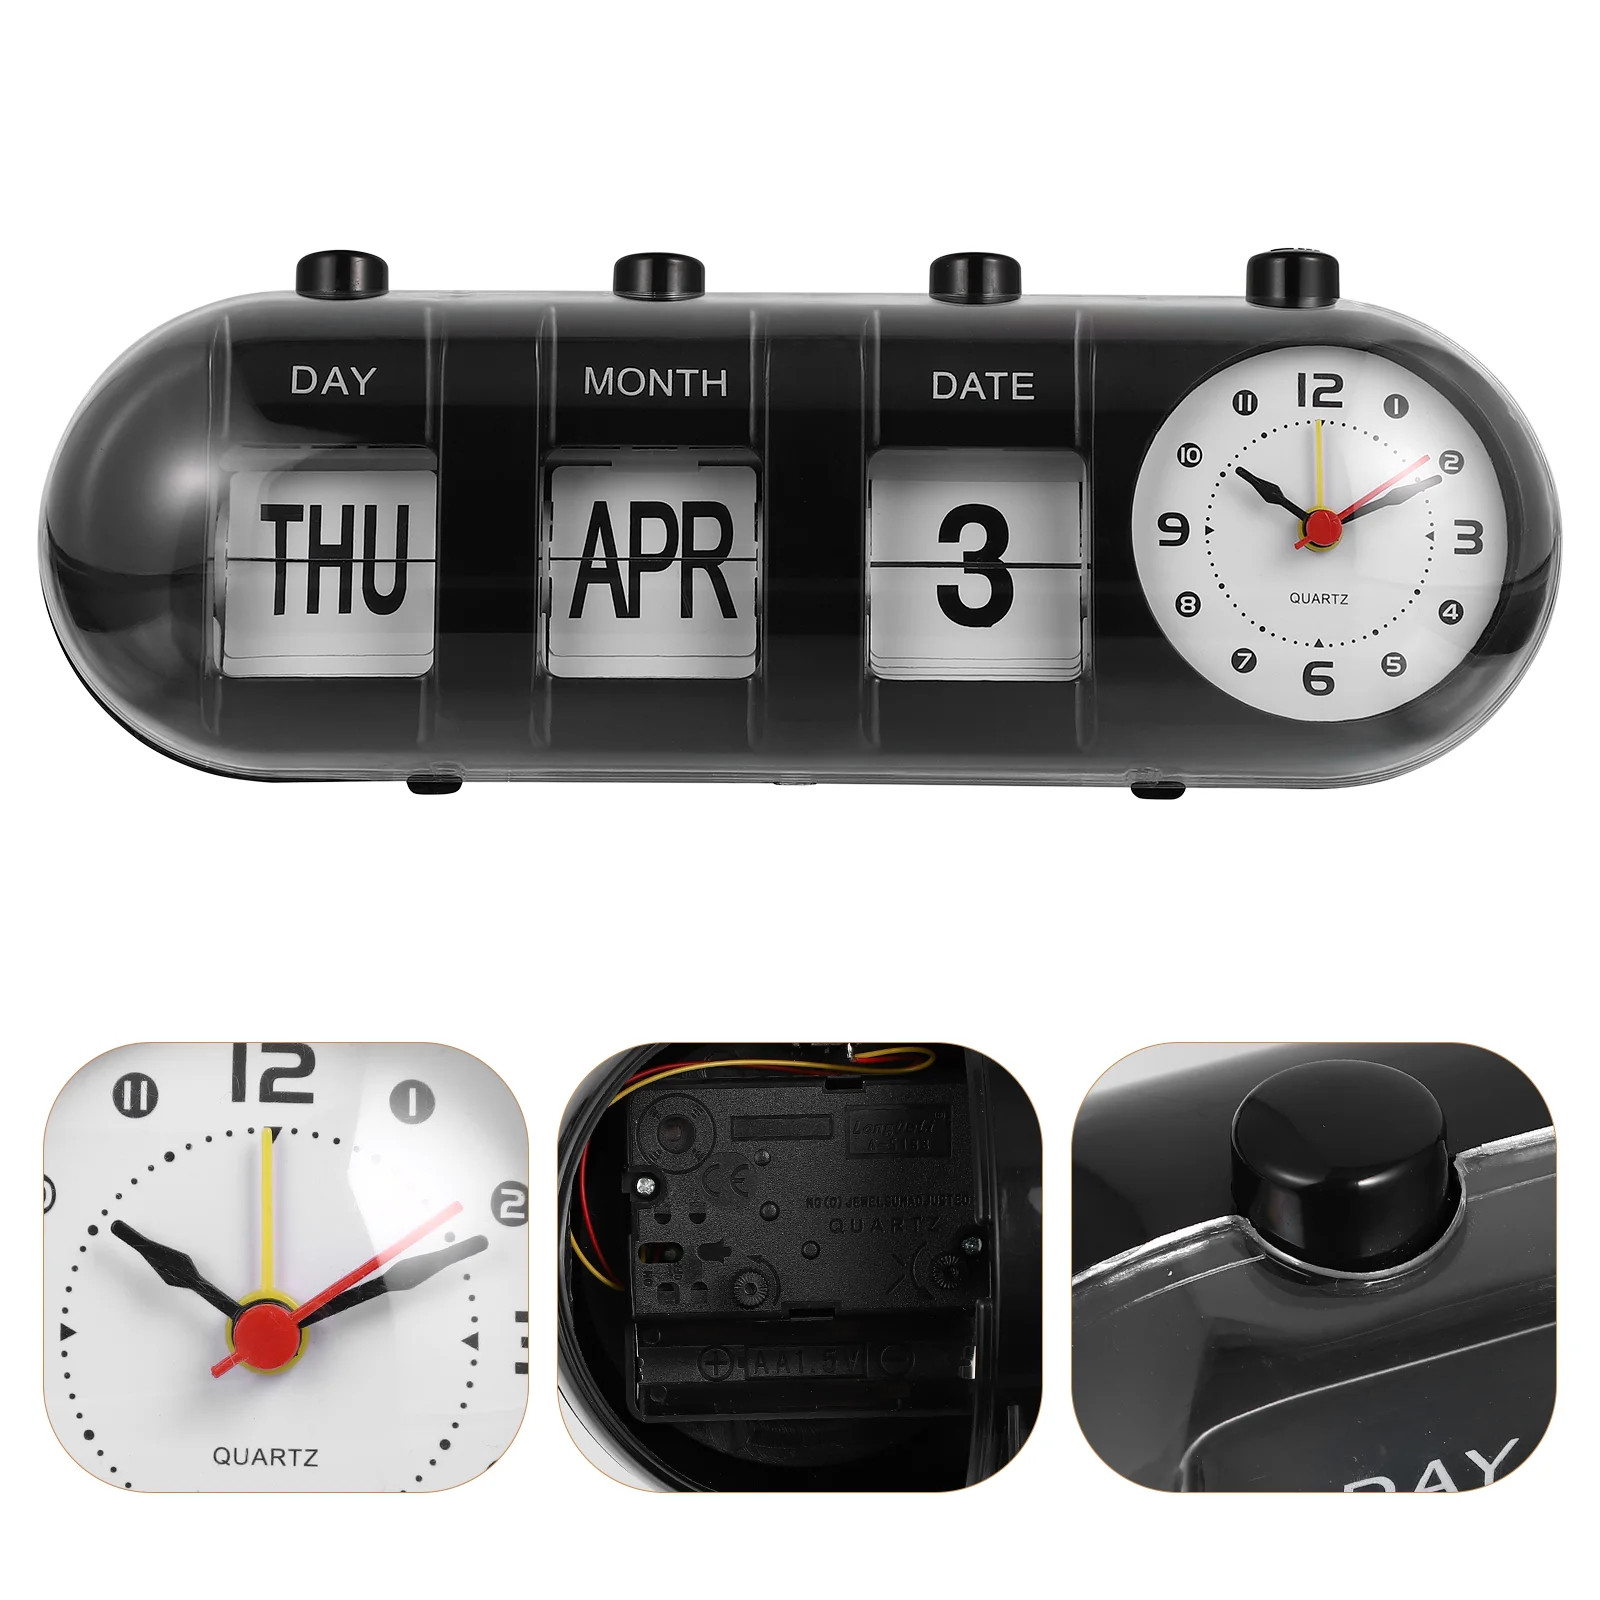 

Календарь вечный настольный с часами, ручной календарь, цифровое украшение для дома и офиса, дата и месяц, черный